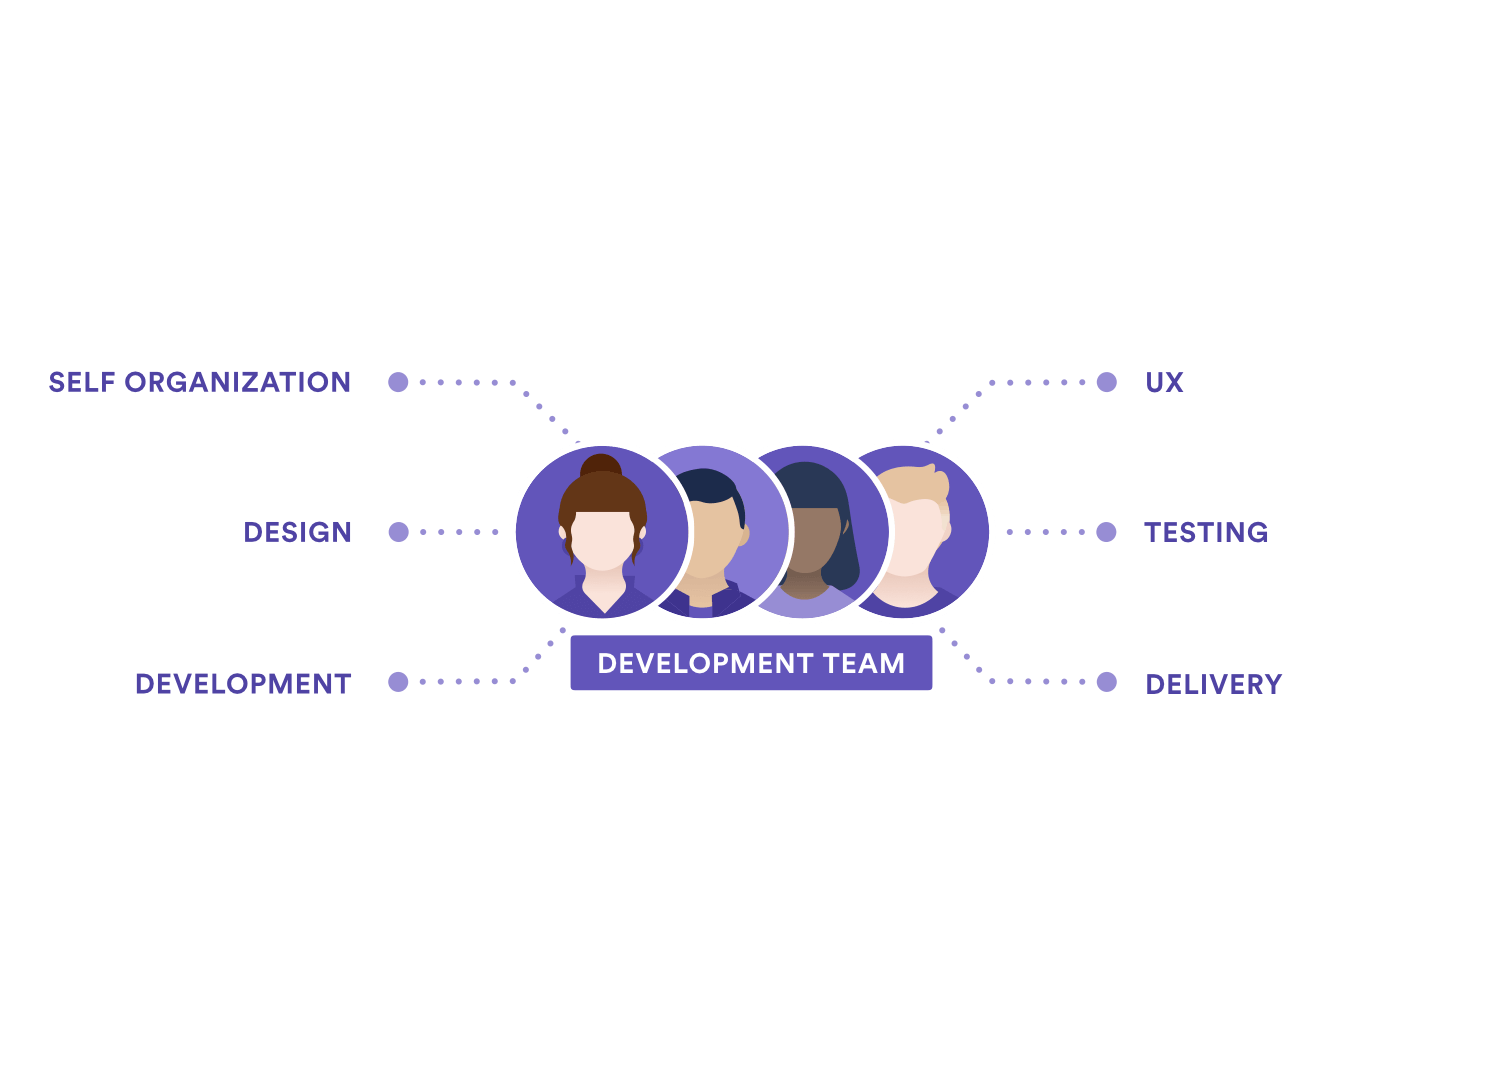 Diagrama que mostra as responsabilidades da equipe de desenvolvimento: auto-organização, design, desenvolvimento, UX, teste e implementação.